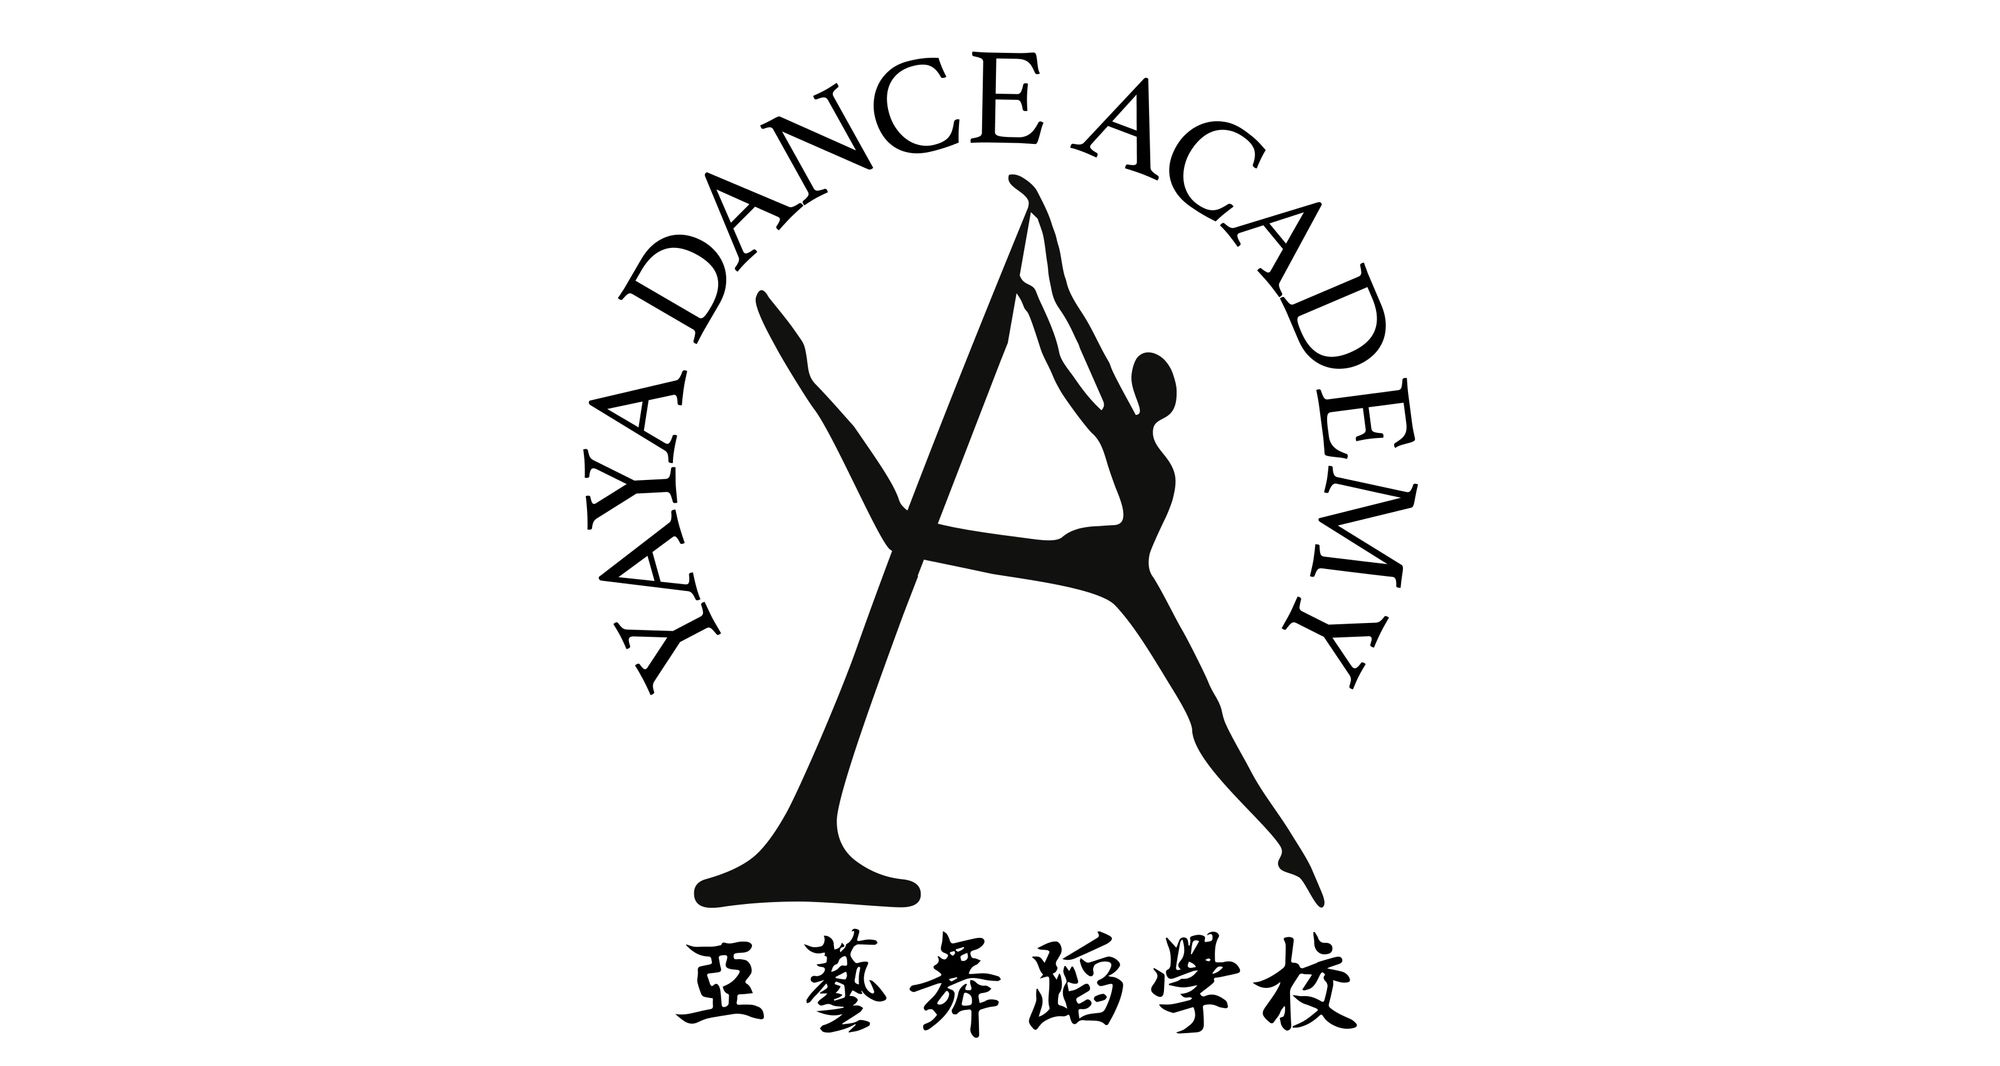 Chinese Cultural and Folk Dances - Yaya Dance Academy